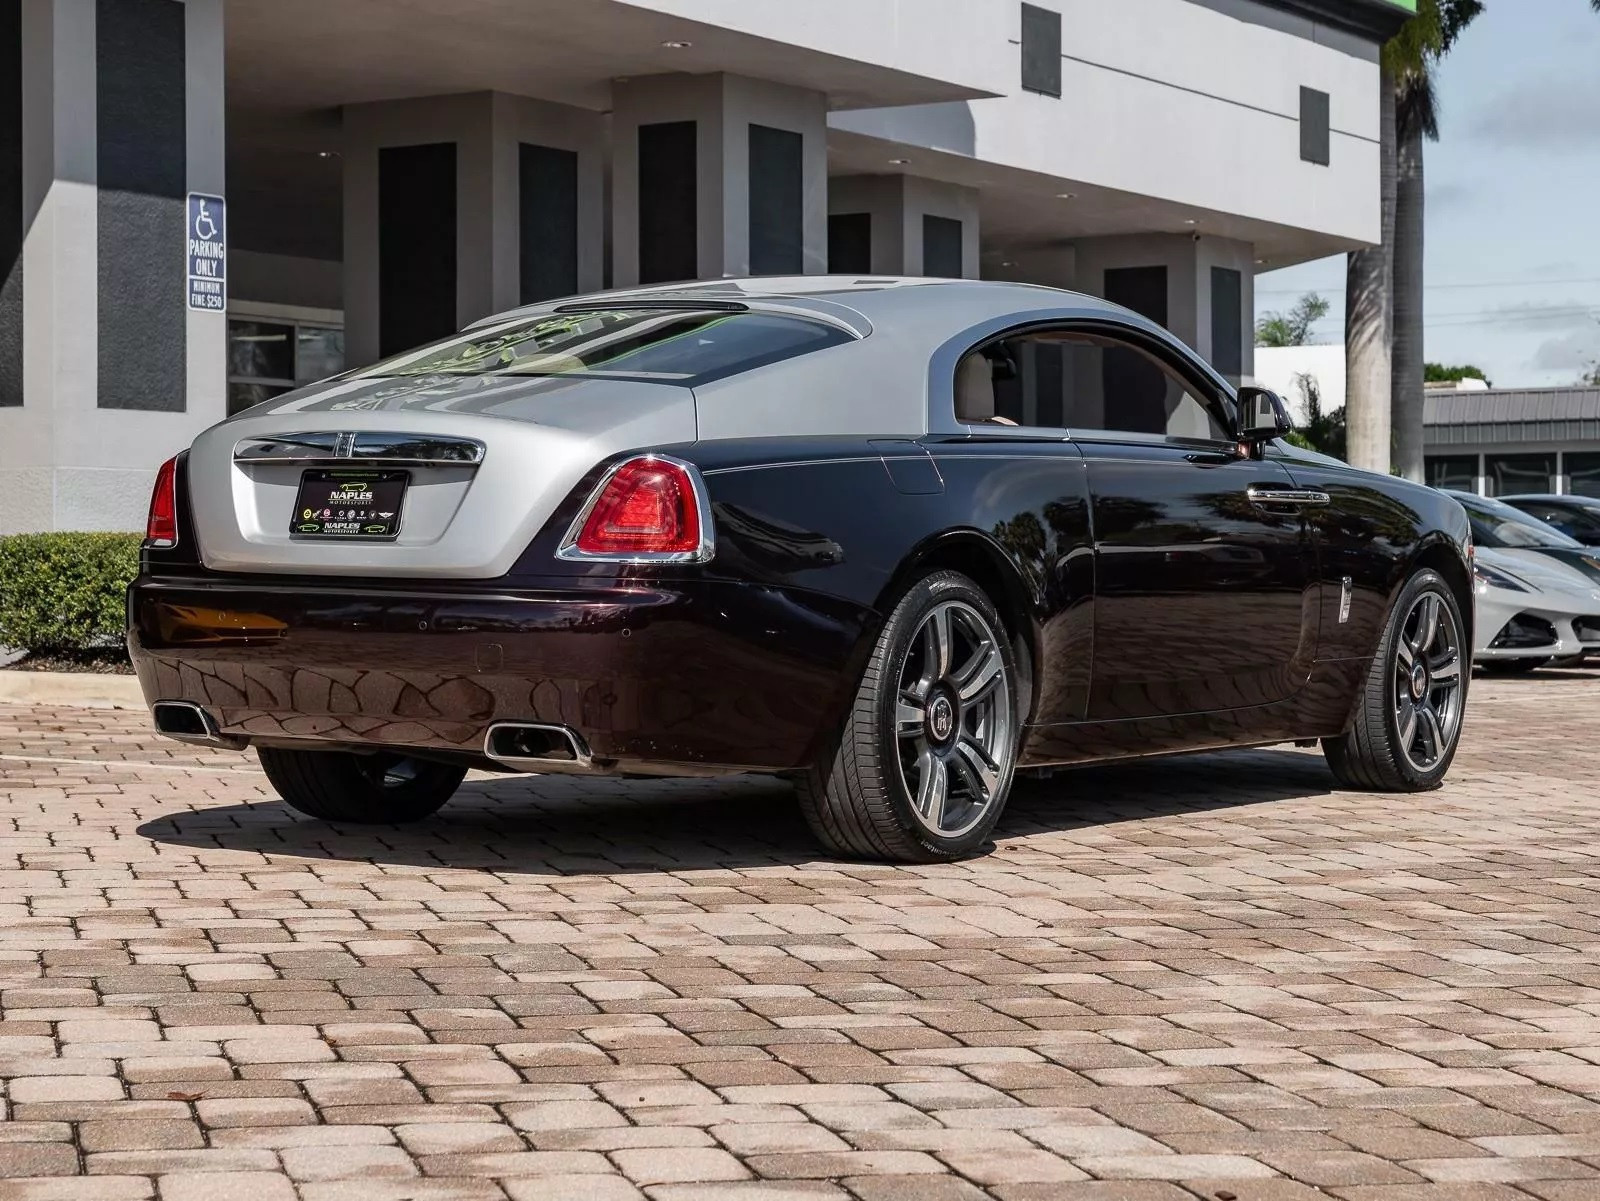 Mua siêu xe Bugatti Chiron 3,8 triệu USD, đại gia được tặng kèm Rolls-Royce